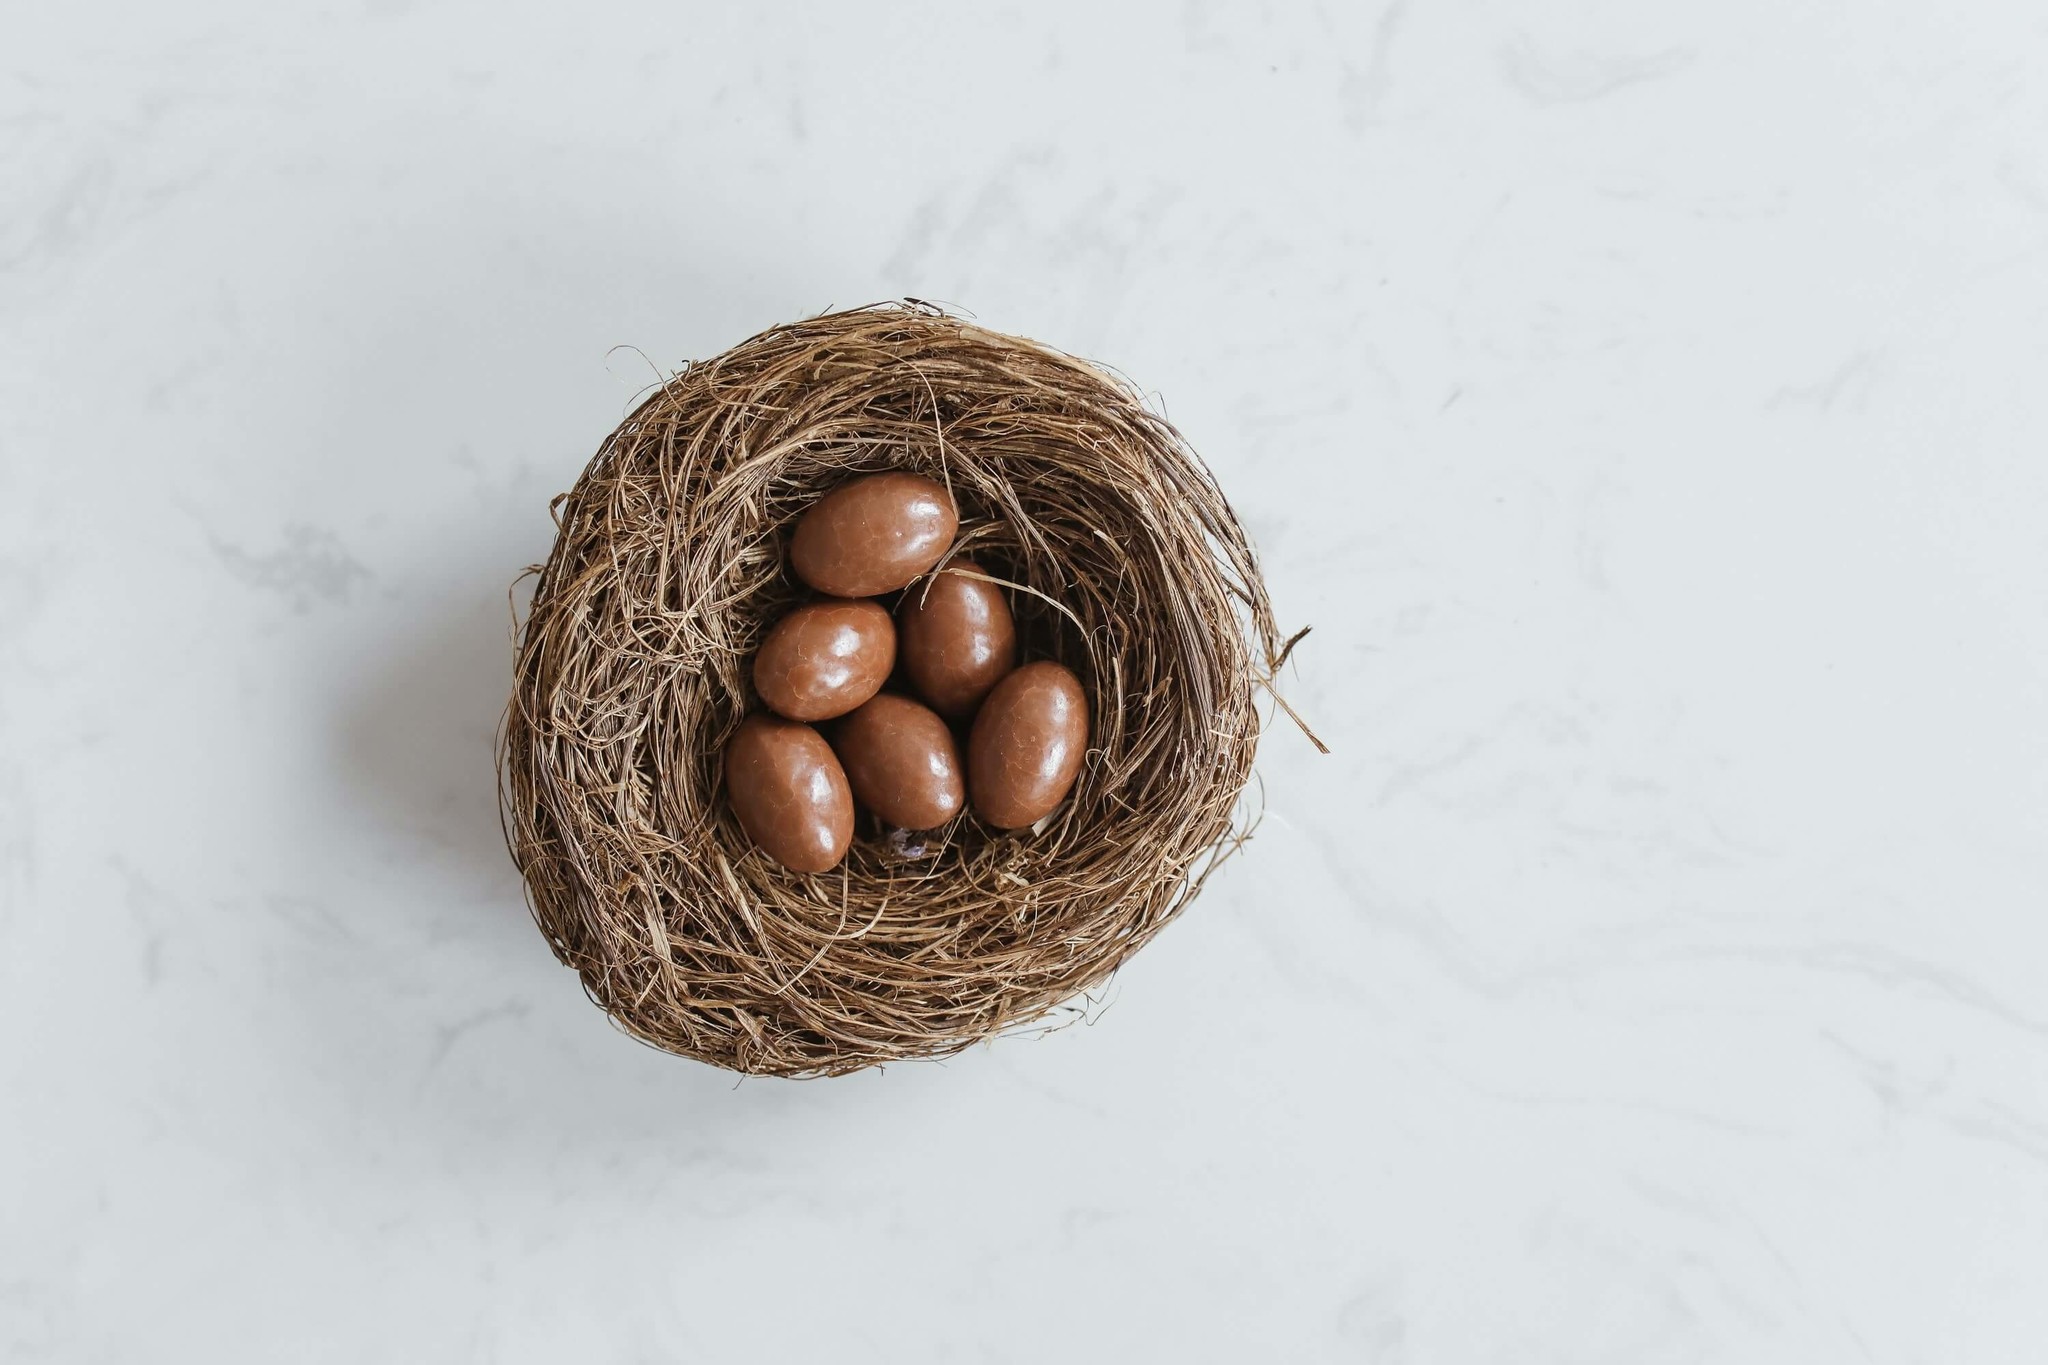 Découvrez la recette pour faire ses œufs en chocolat maison